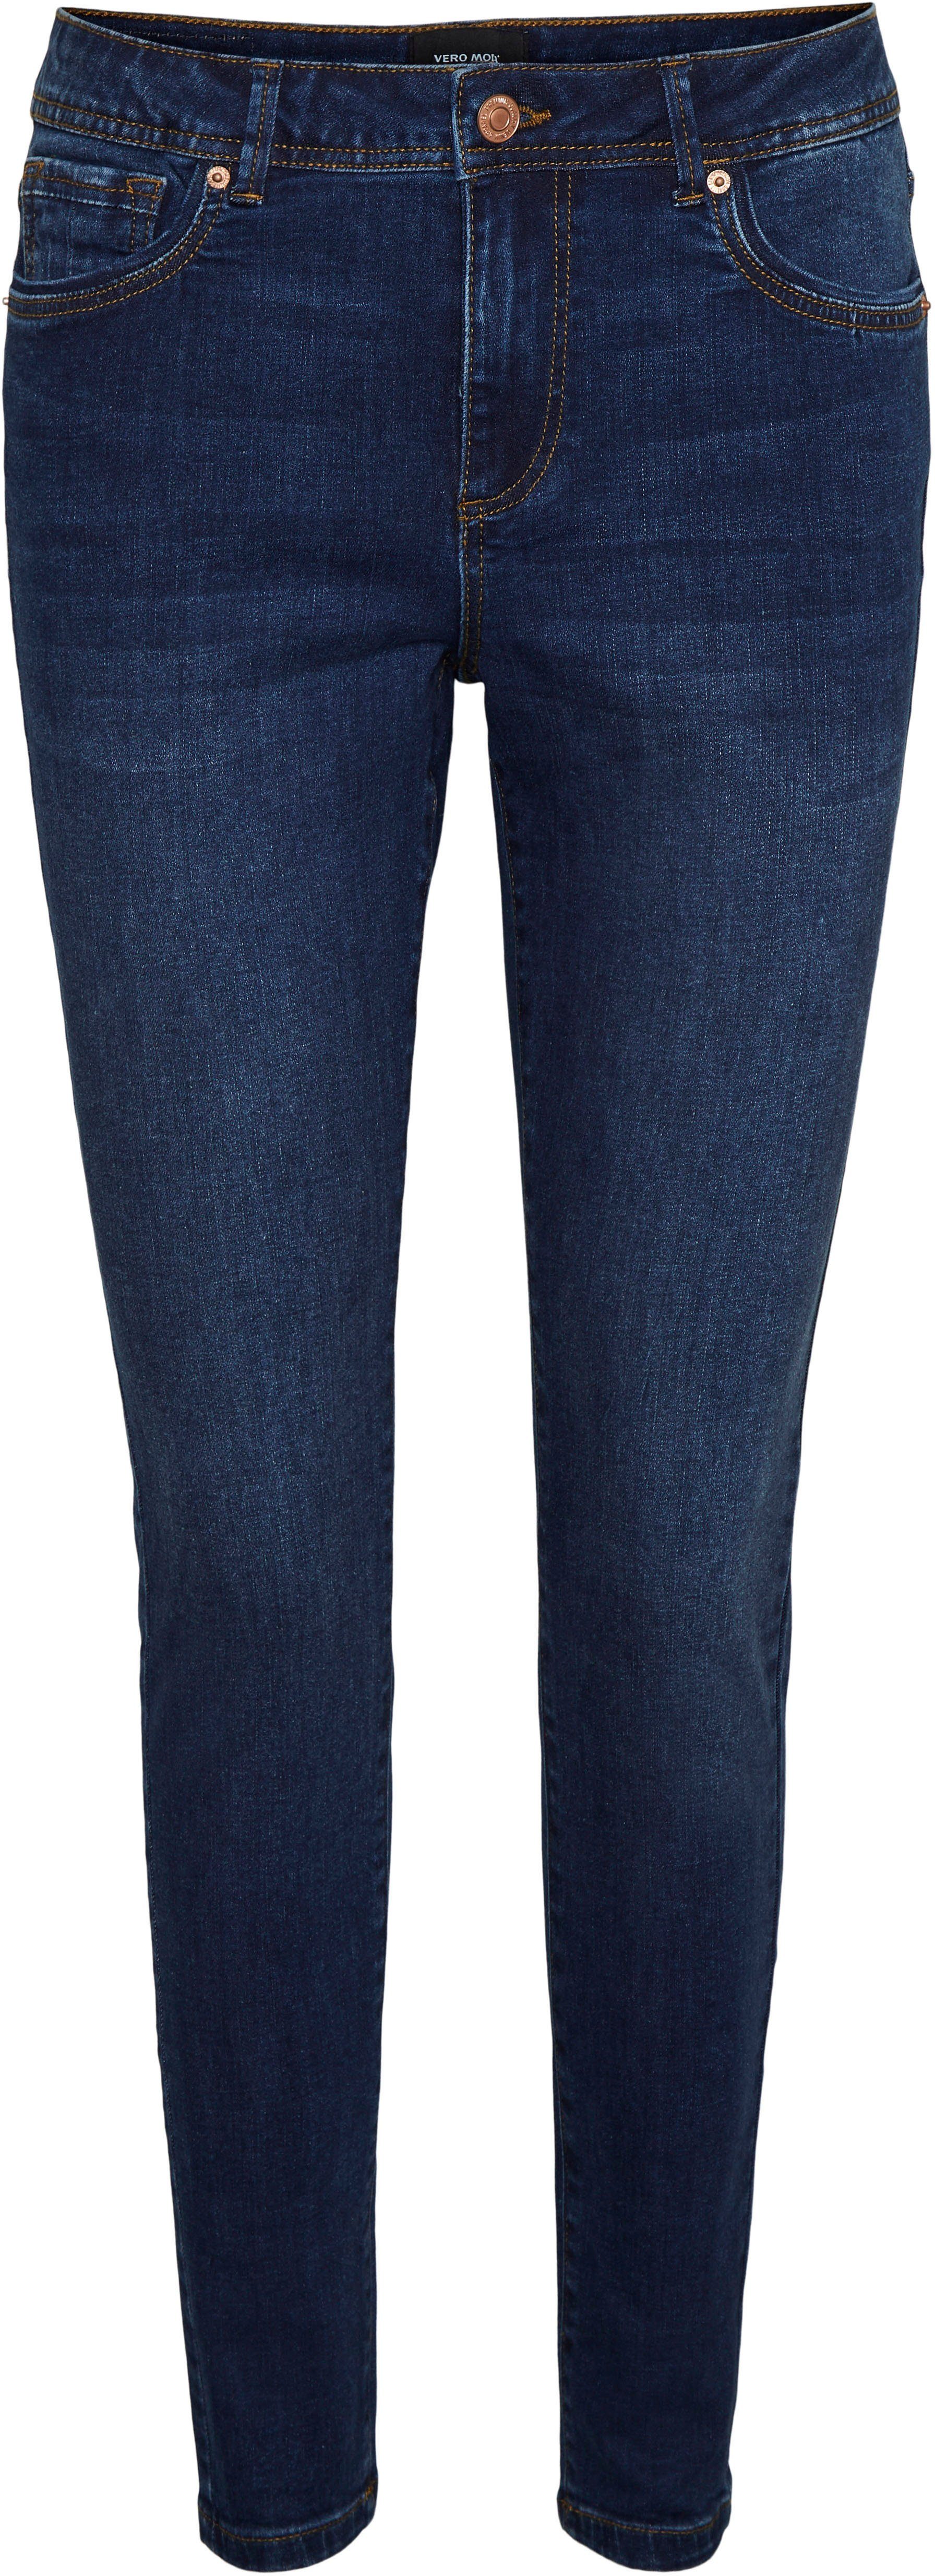 MR Skinny-fit-Jeans Moda PIPING S Vero VMTANYA